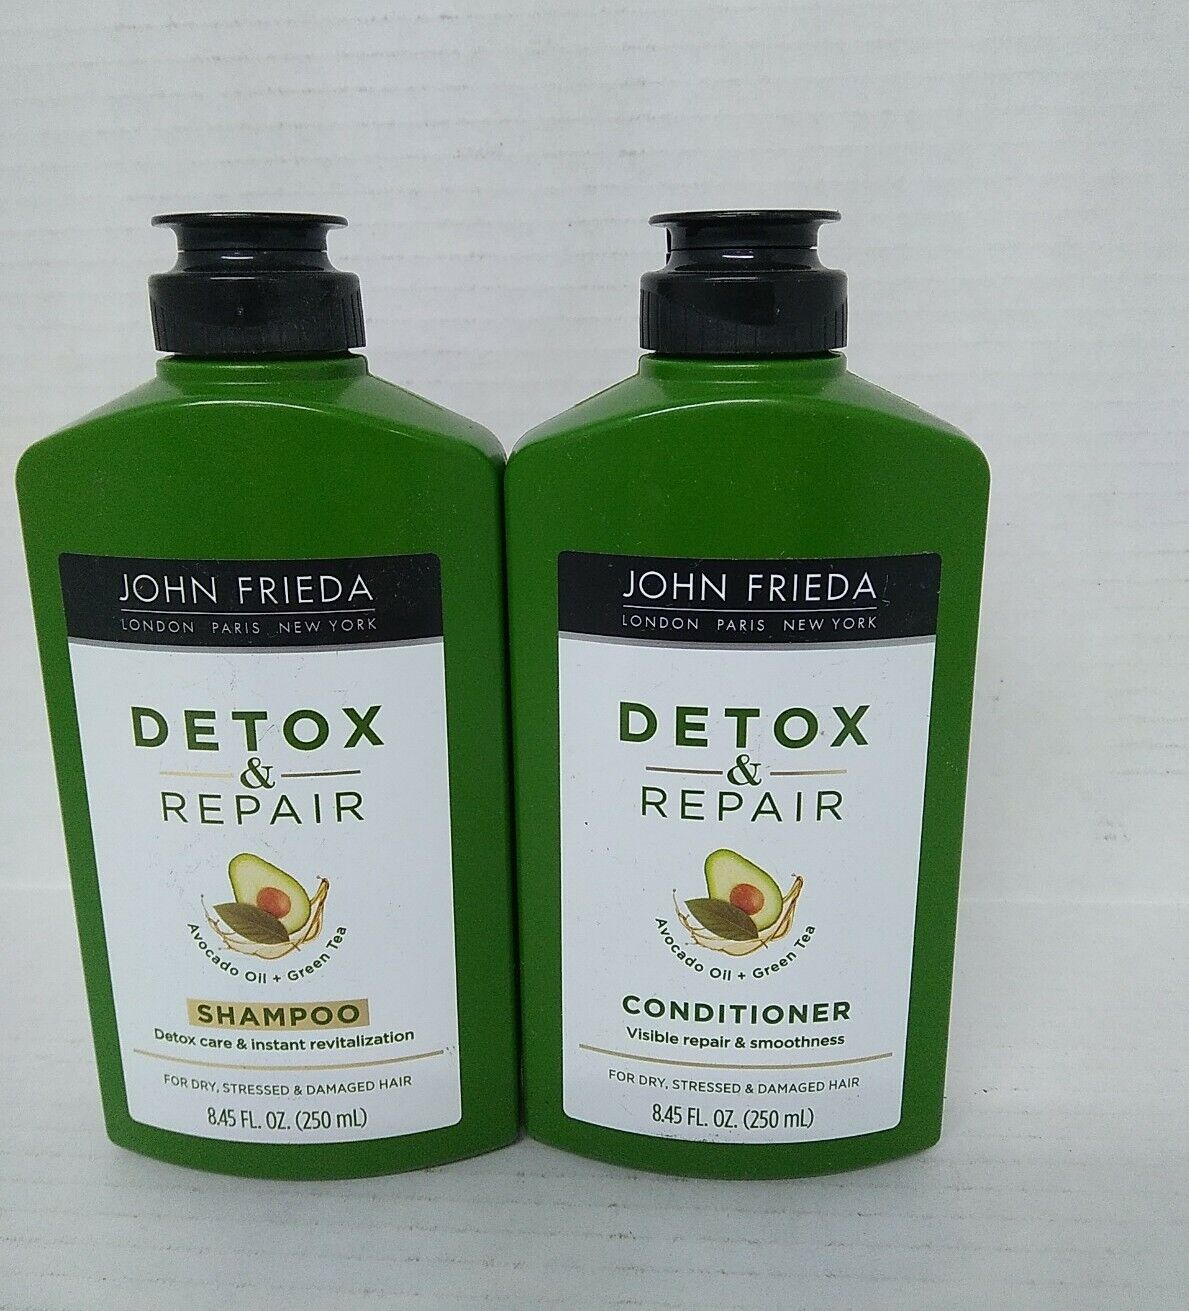 John Frieda Detox & Repair Shampoo + John Frieda Detox & Repair Conditioner 8.45